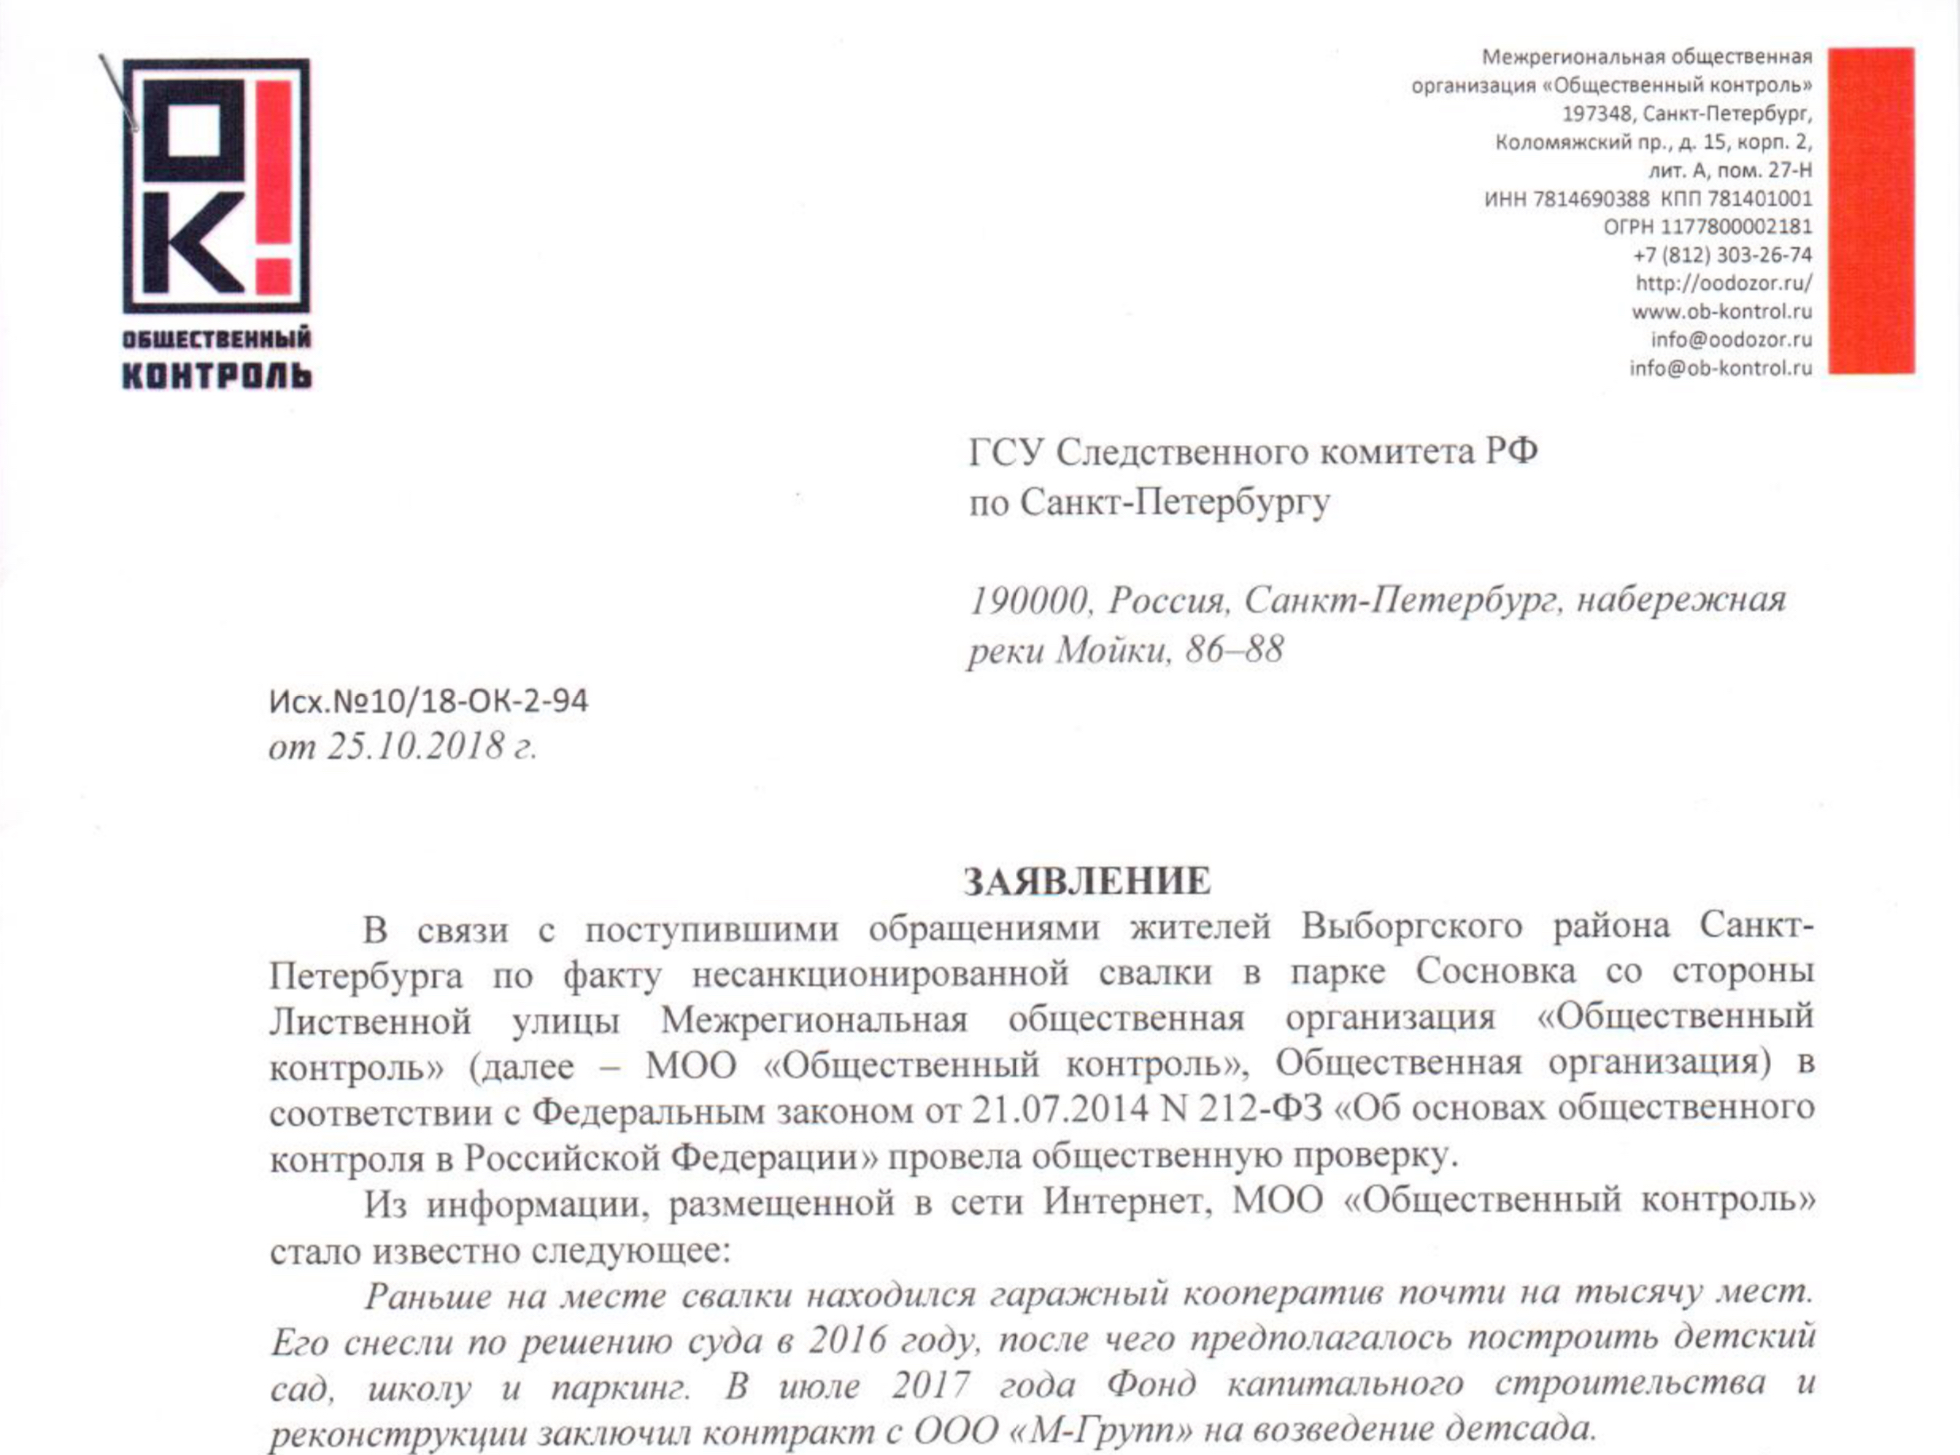 ВГСУ Следственного комитета РФ по Санкт-Петербургу Заявление по факту несанкционированной свалки в парке Сосновка.